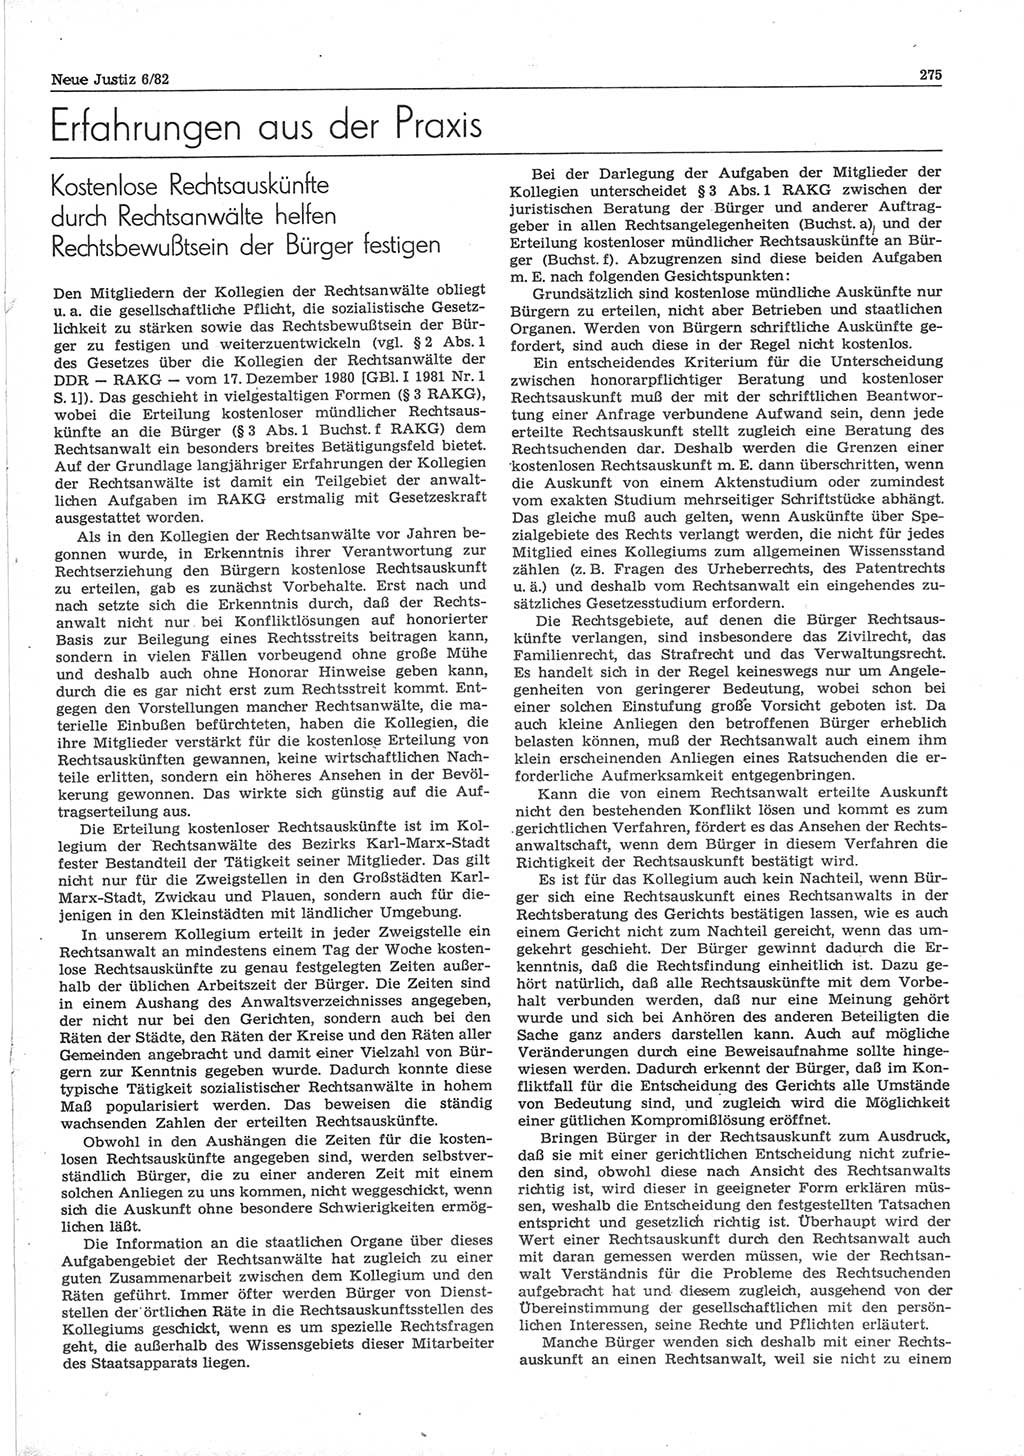 Neue Justiz (NJ), Zeitschrift für sozialistisches Recht und Gesetzlichkeit [Deutsche Demokratische Republik (DDR)], 36. Jahrgang 1982, Seite 275 (NJ DDR 1982, S. 275)